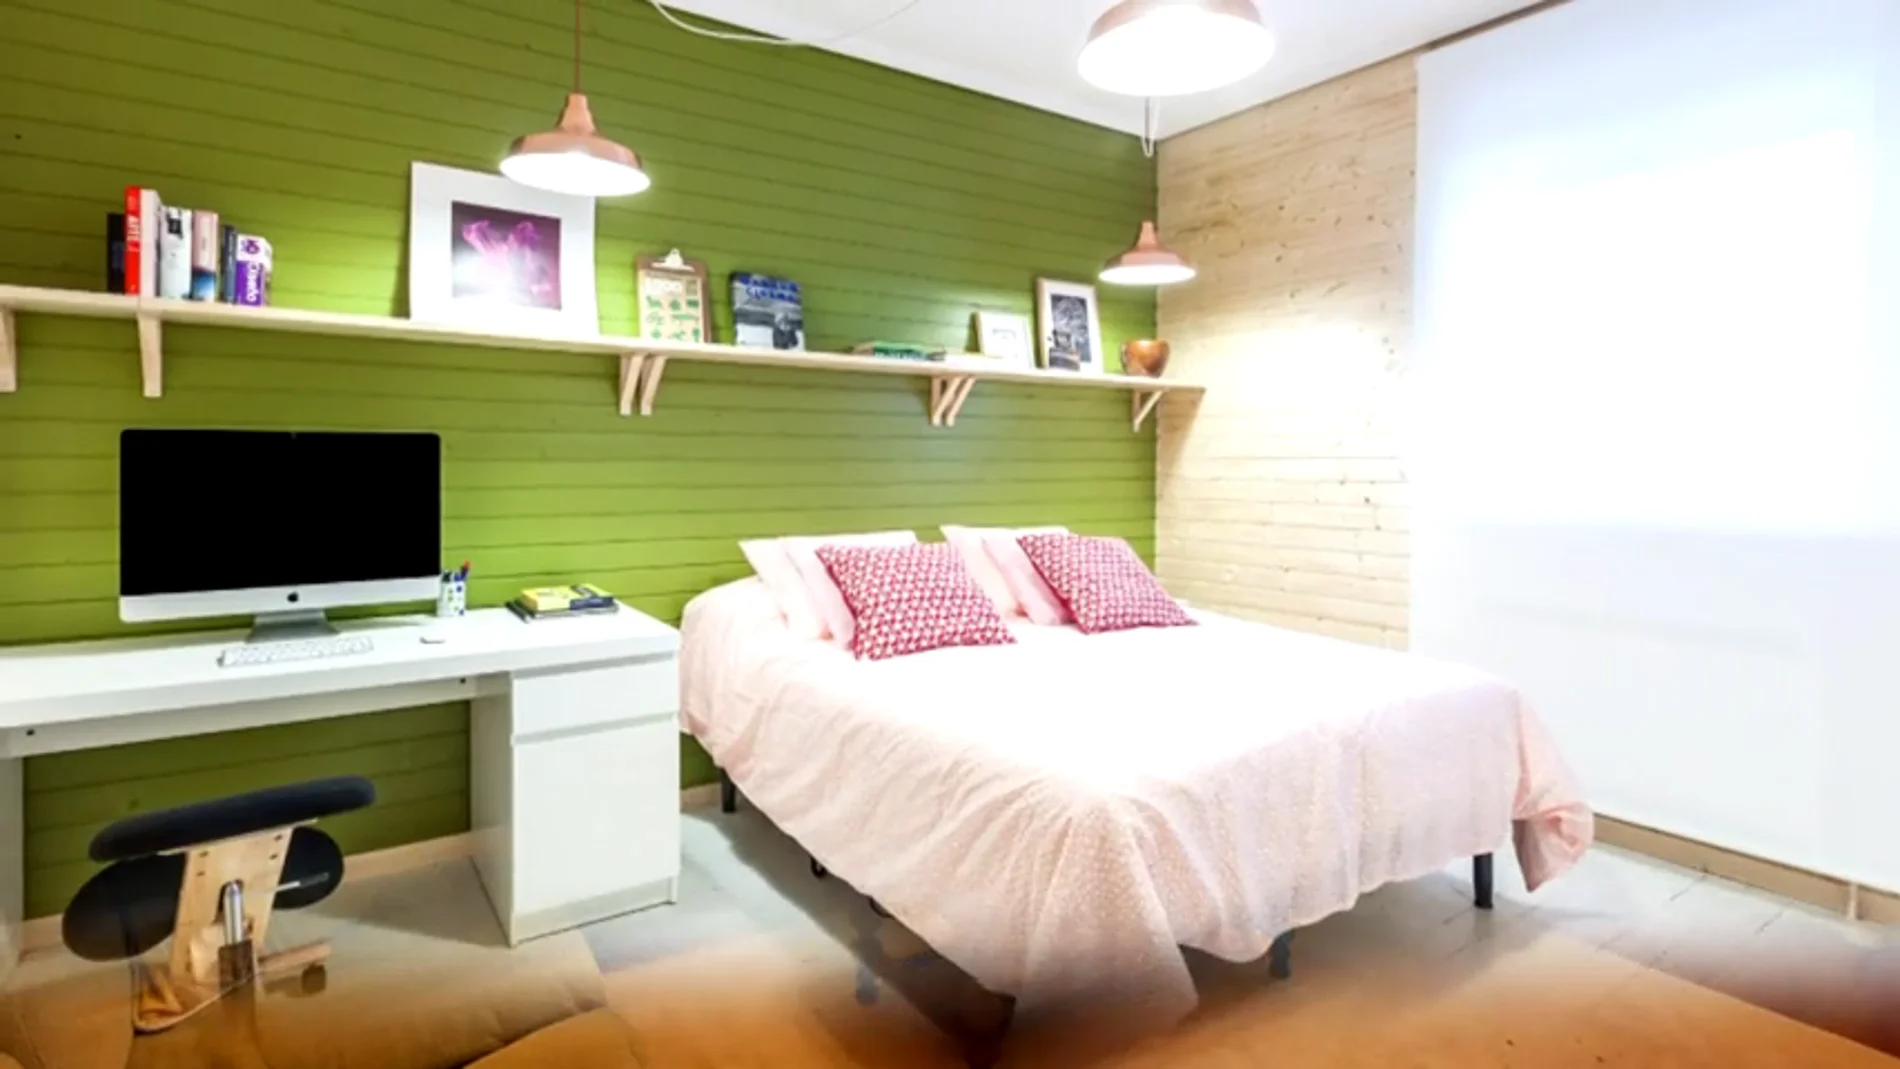 Dormitorio de estilo nórdico con materiales naturales